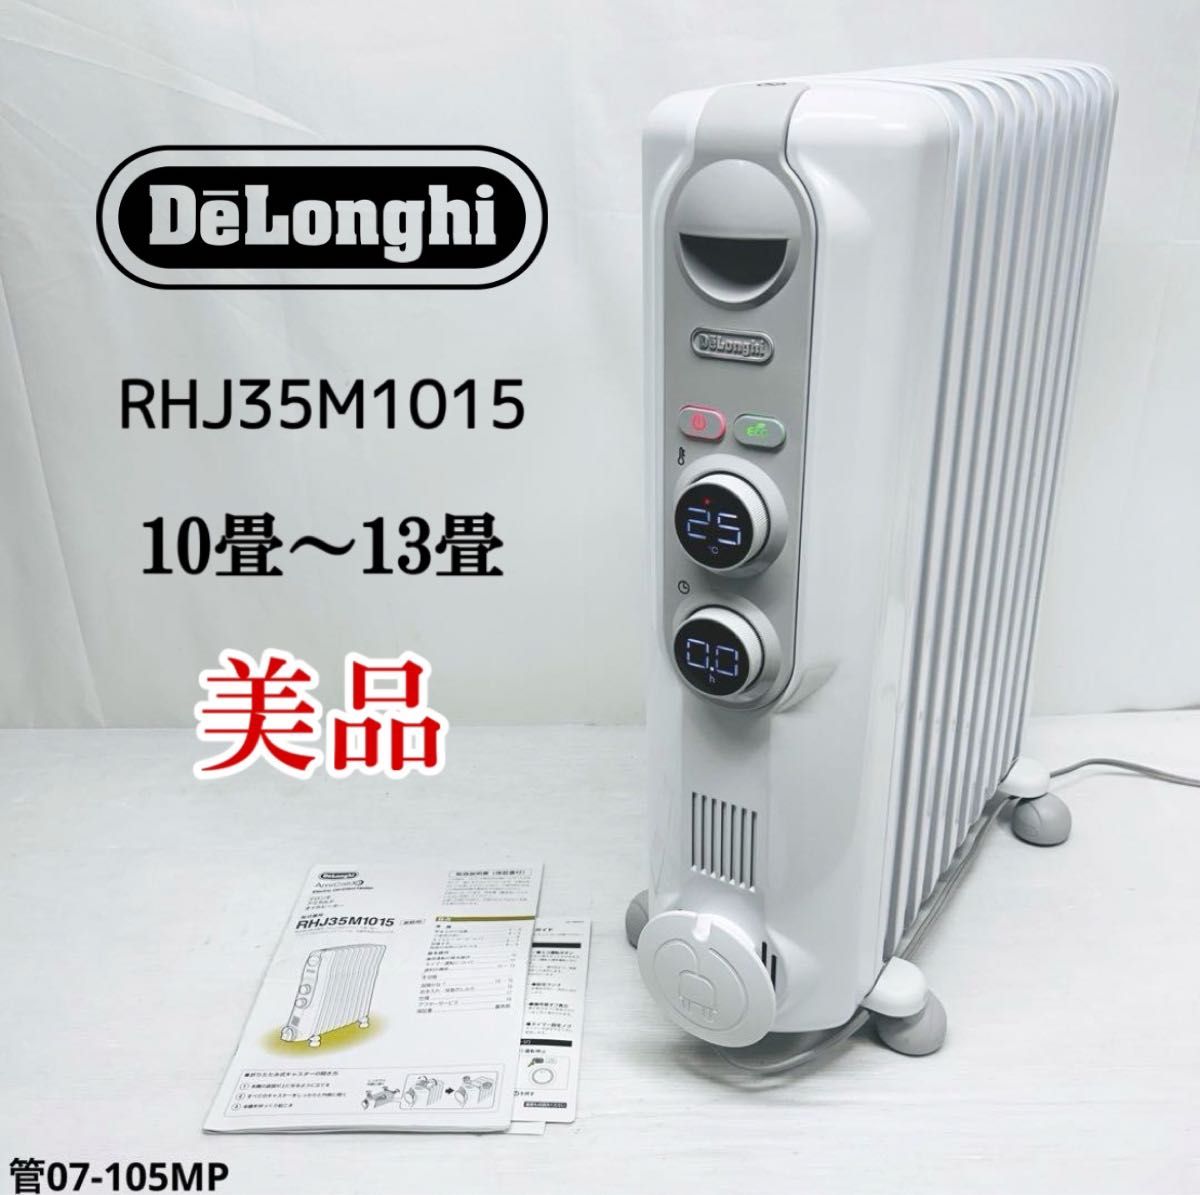 デロンギ(Delonghi) RHJ35M1015-LG アミカルド